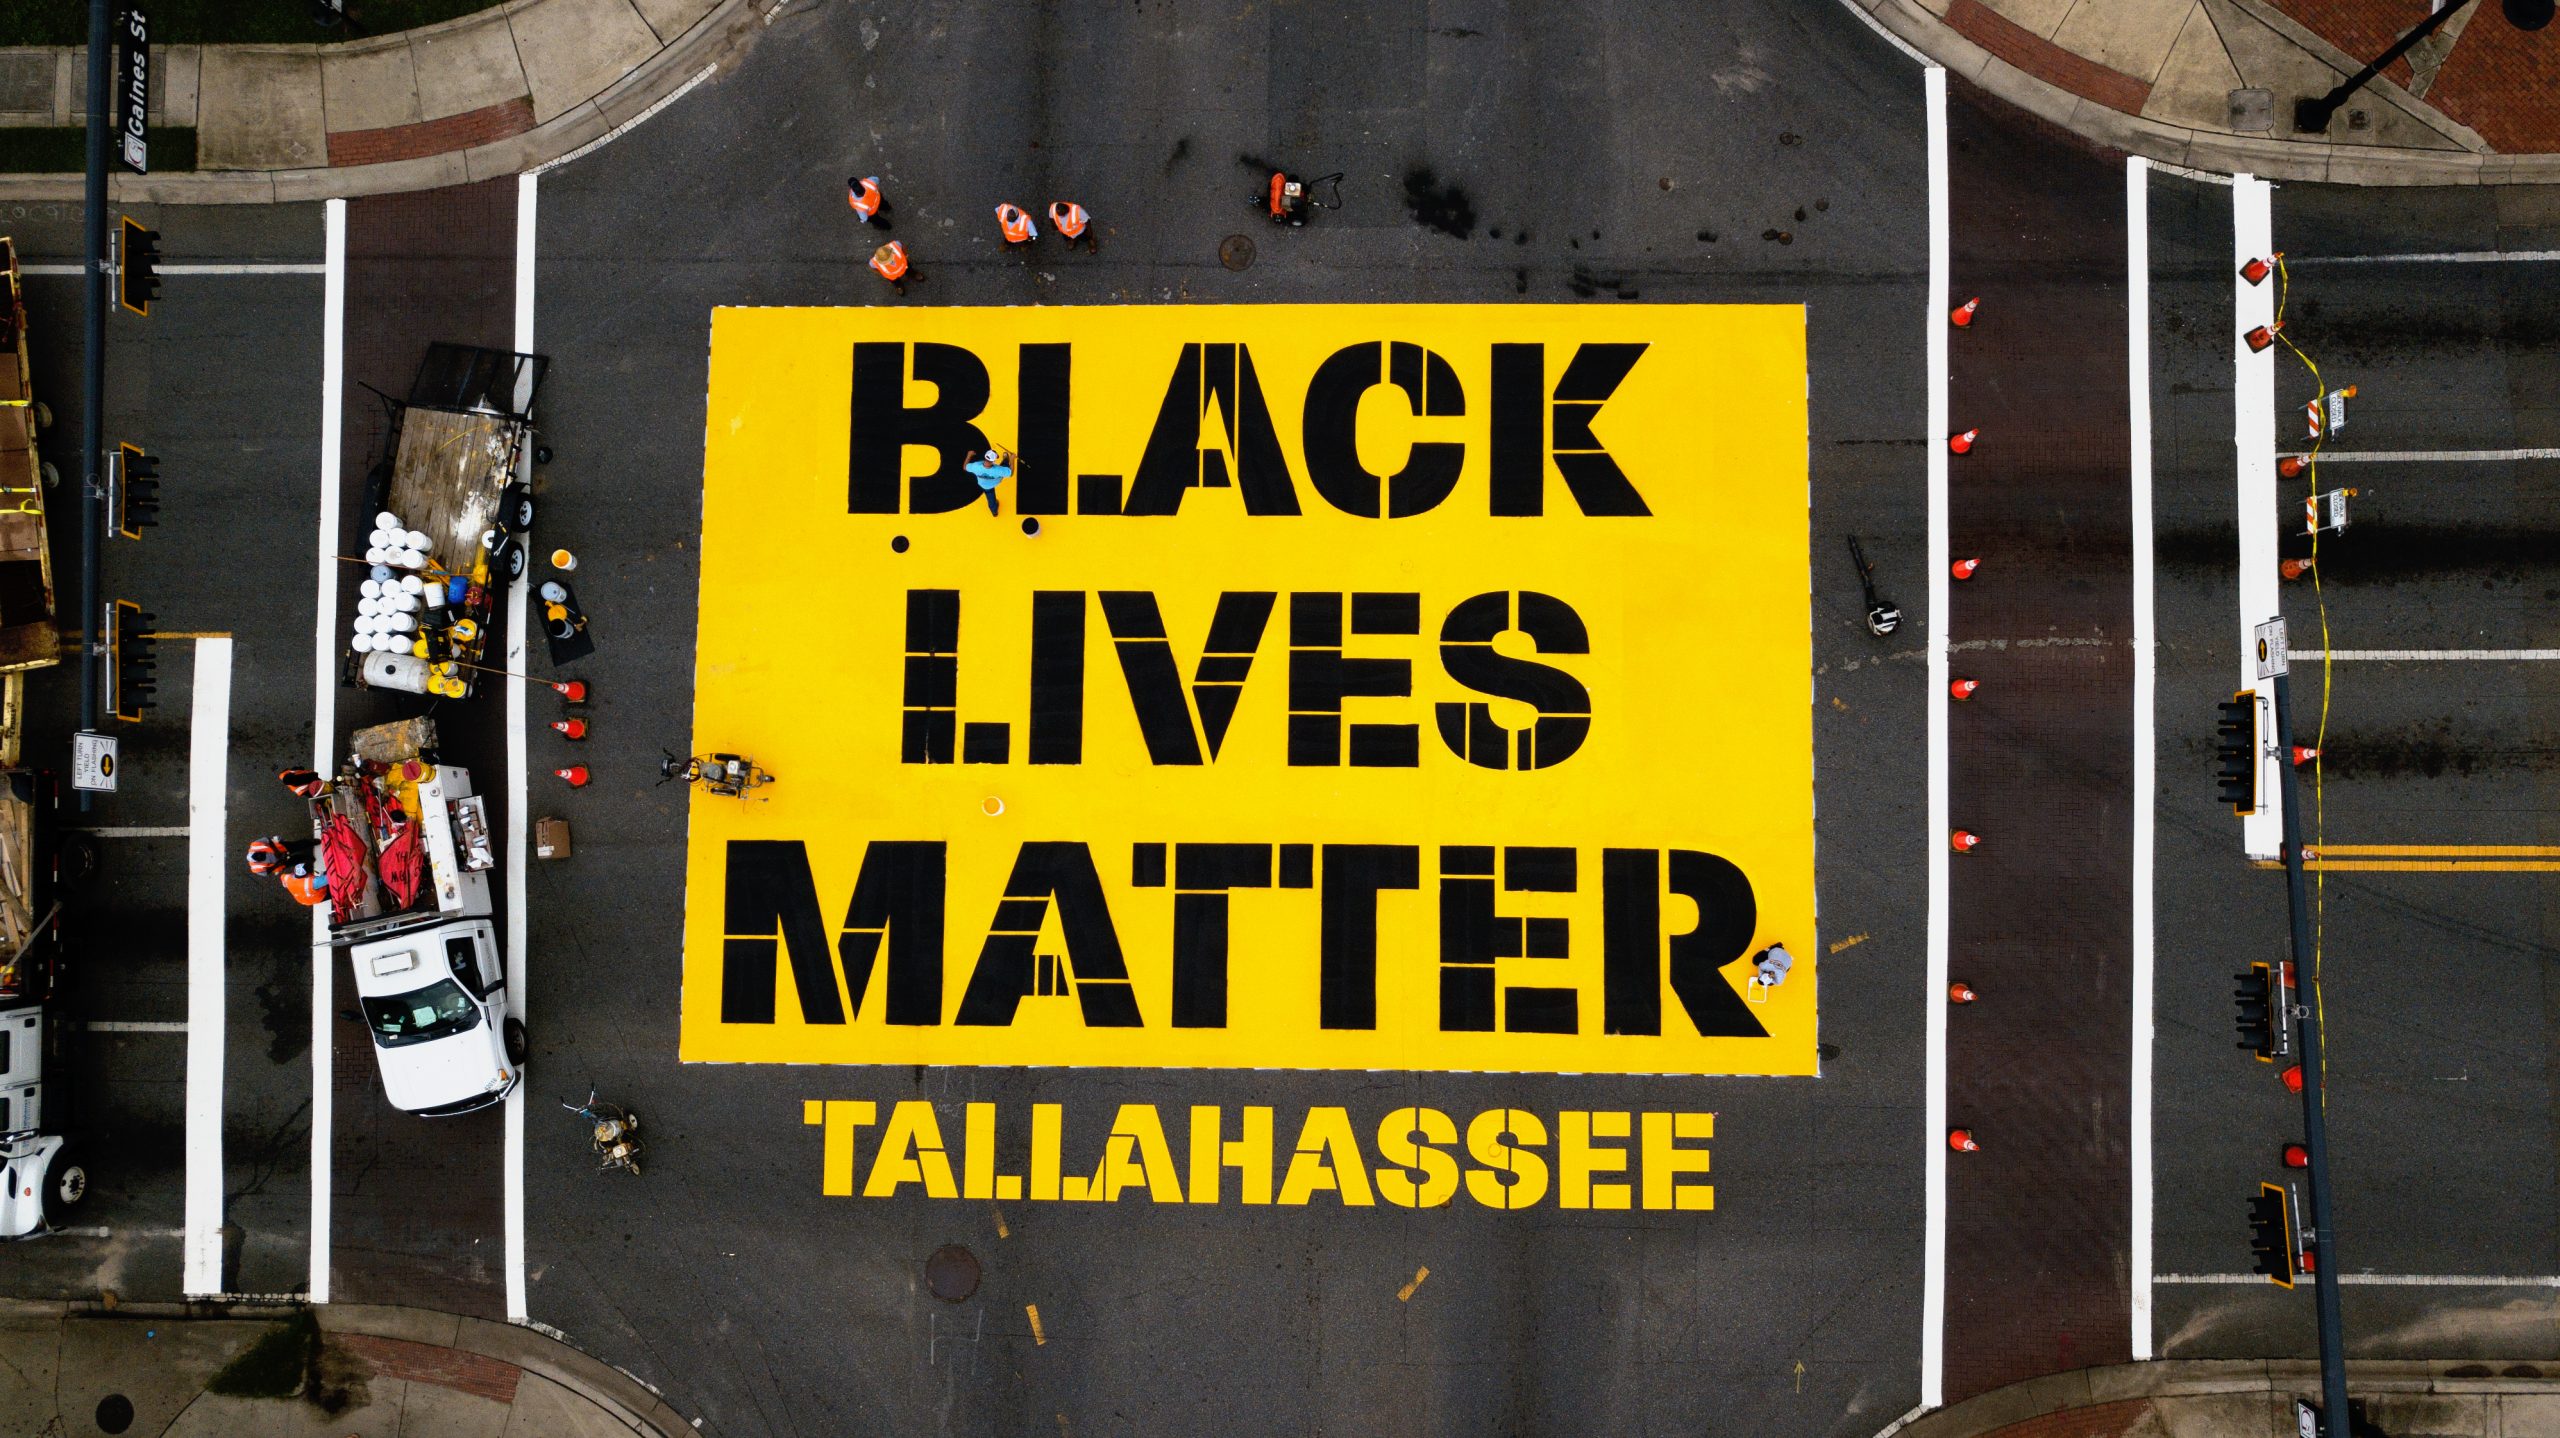 black lives matter mural